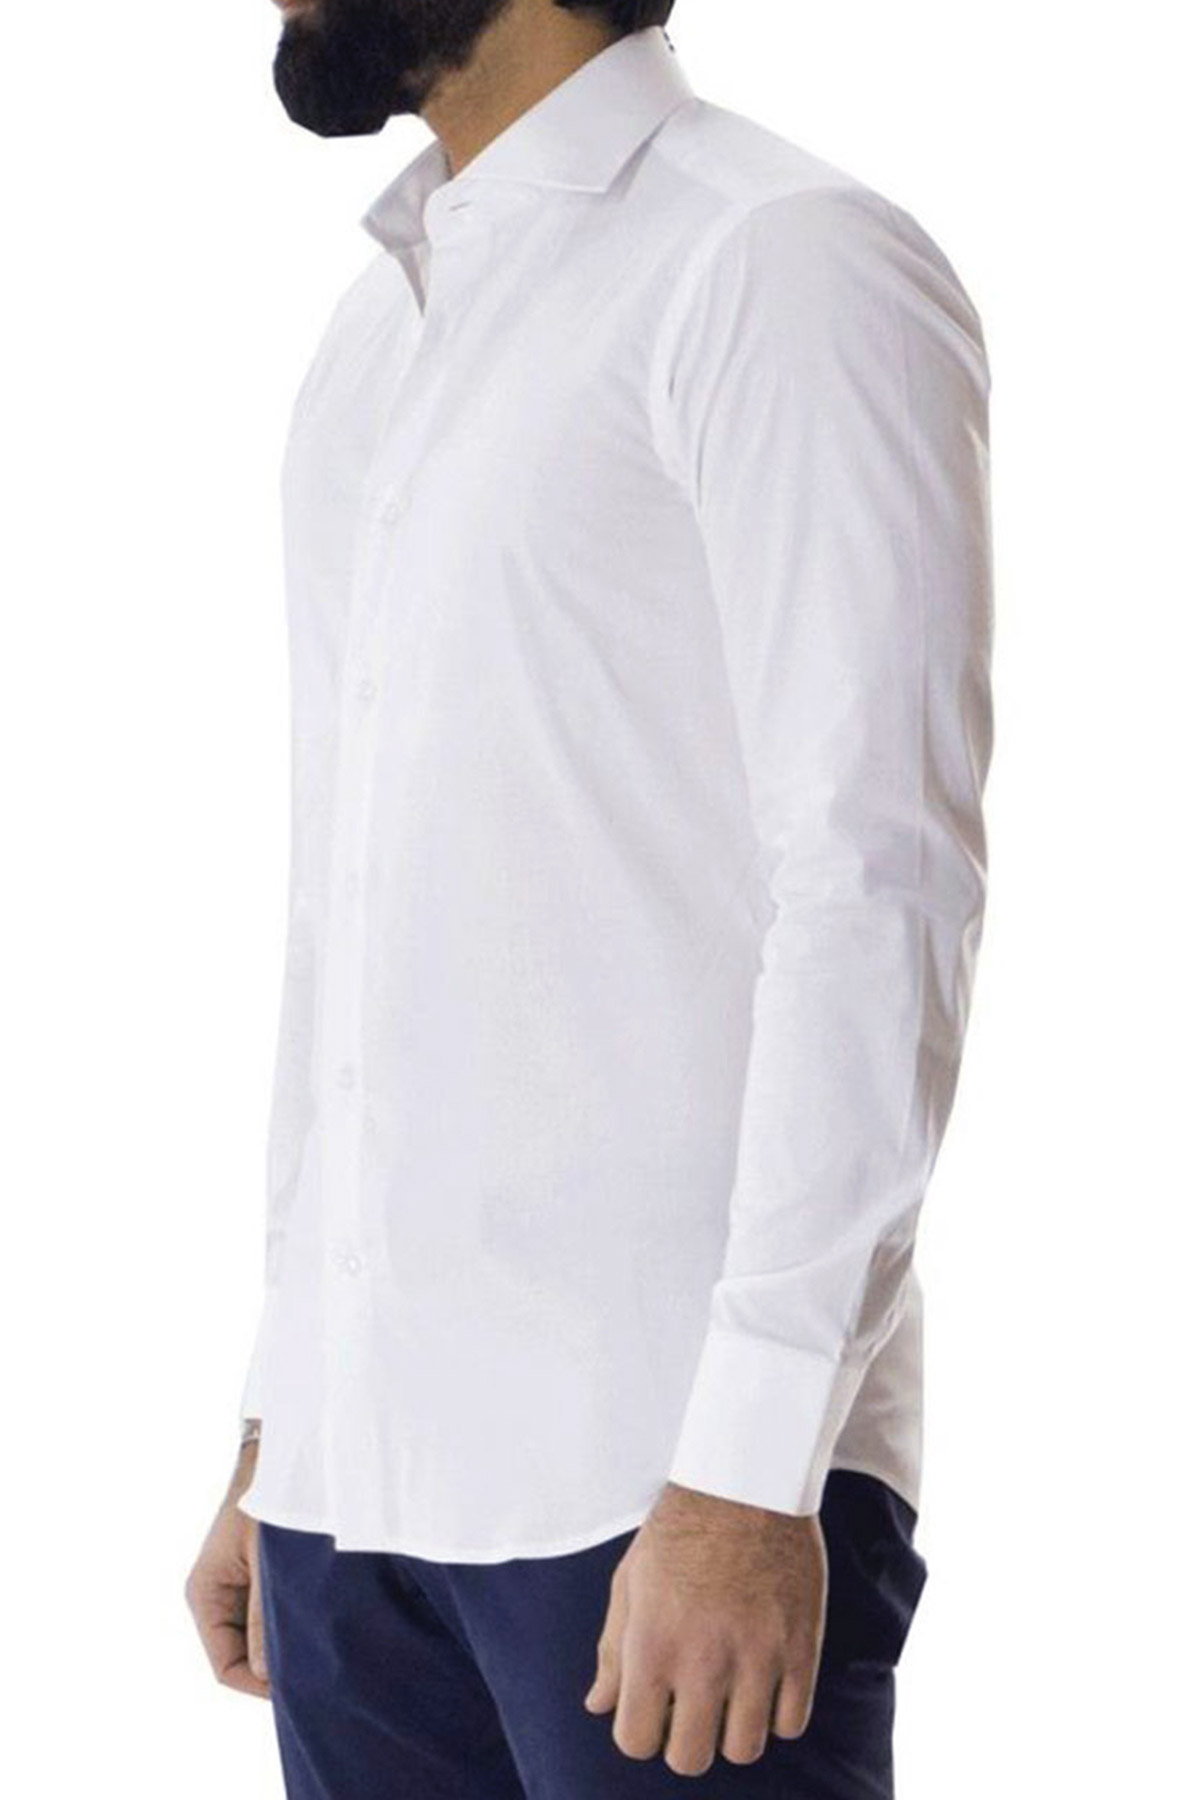 MODA UOMO Camicie & T-shirt Custom fit Nero/Bianco M sconto 62% C&A Camicia 